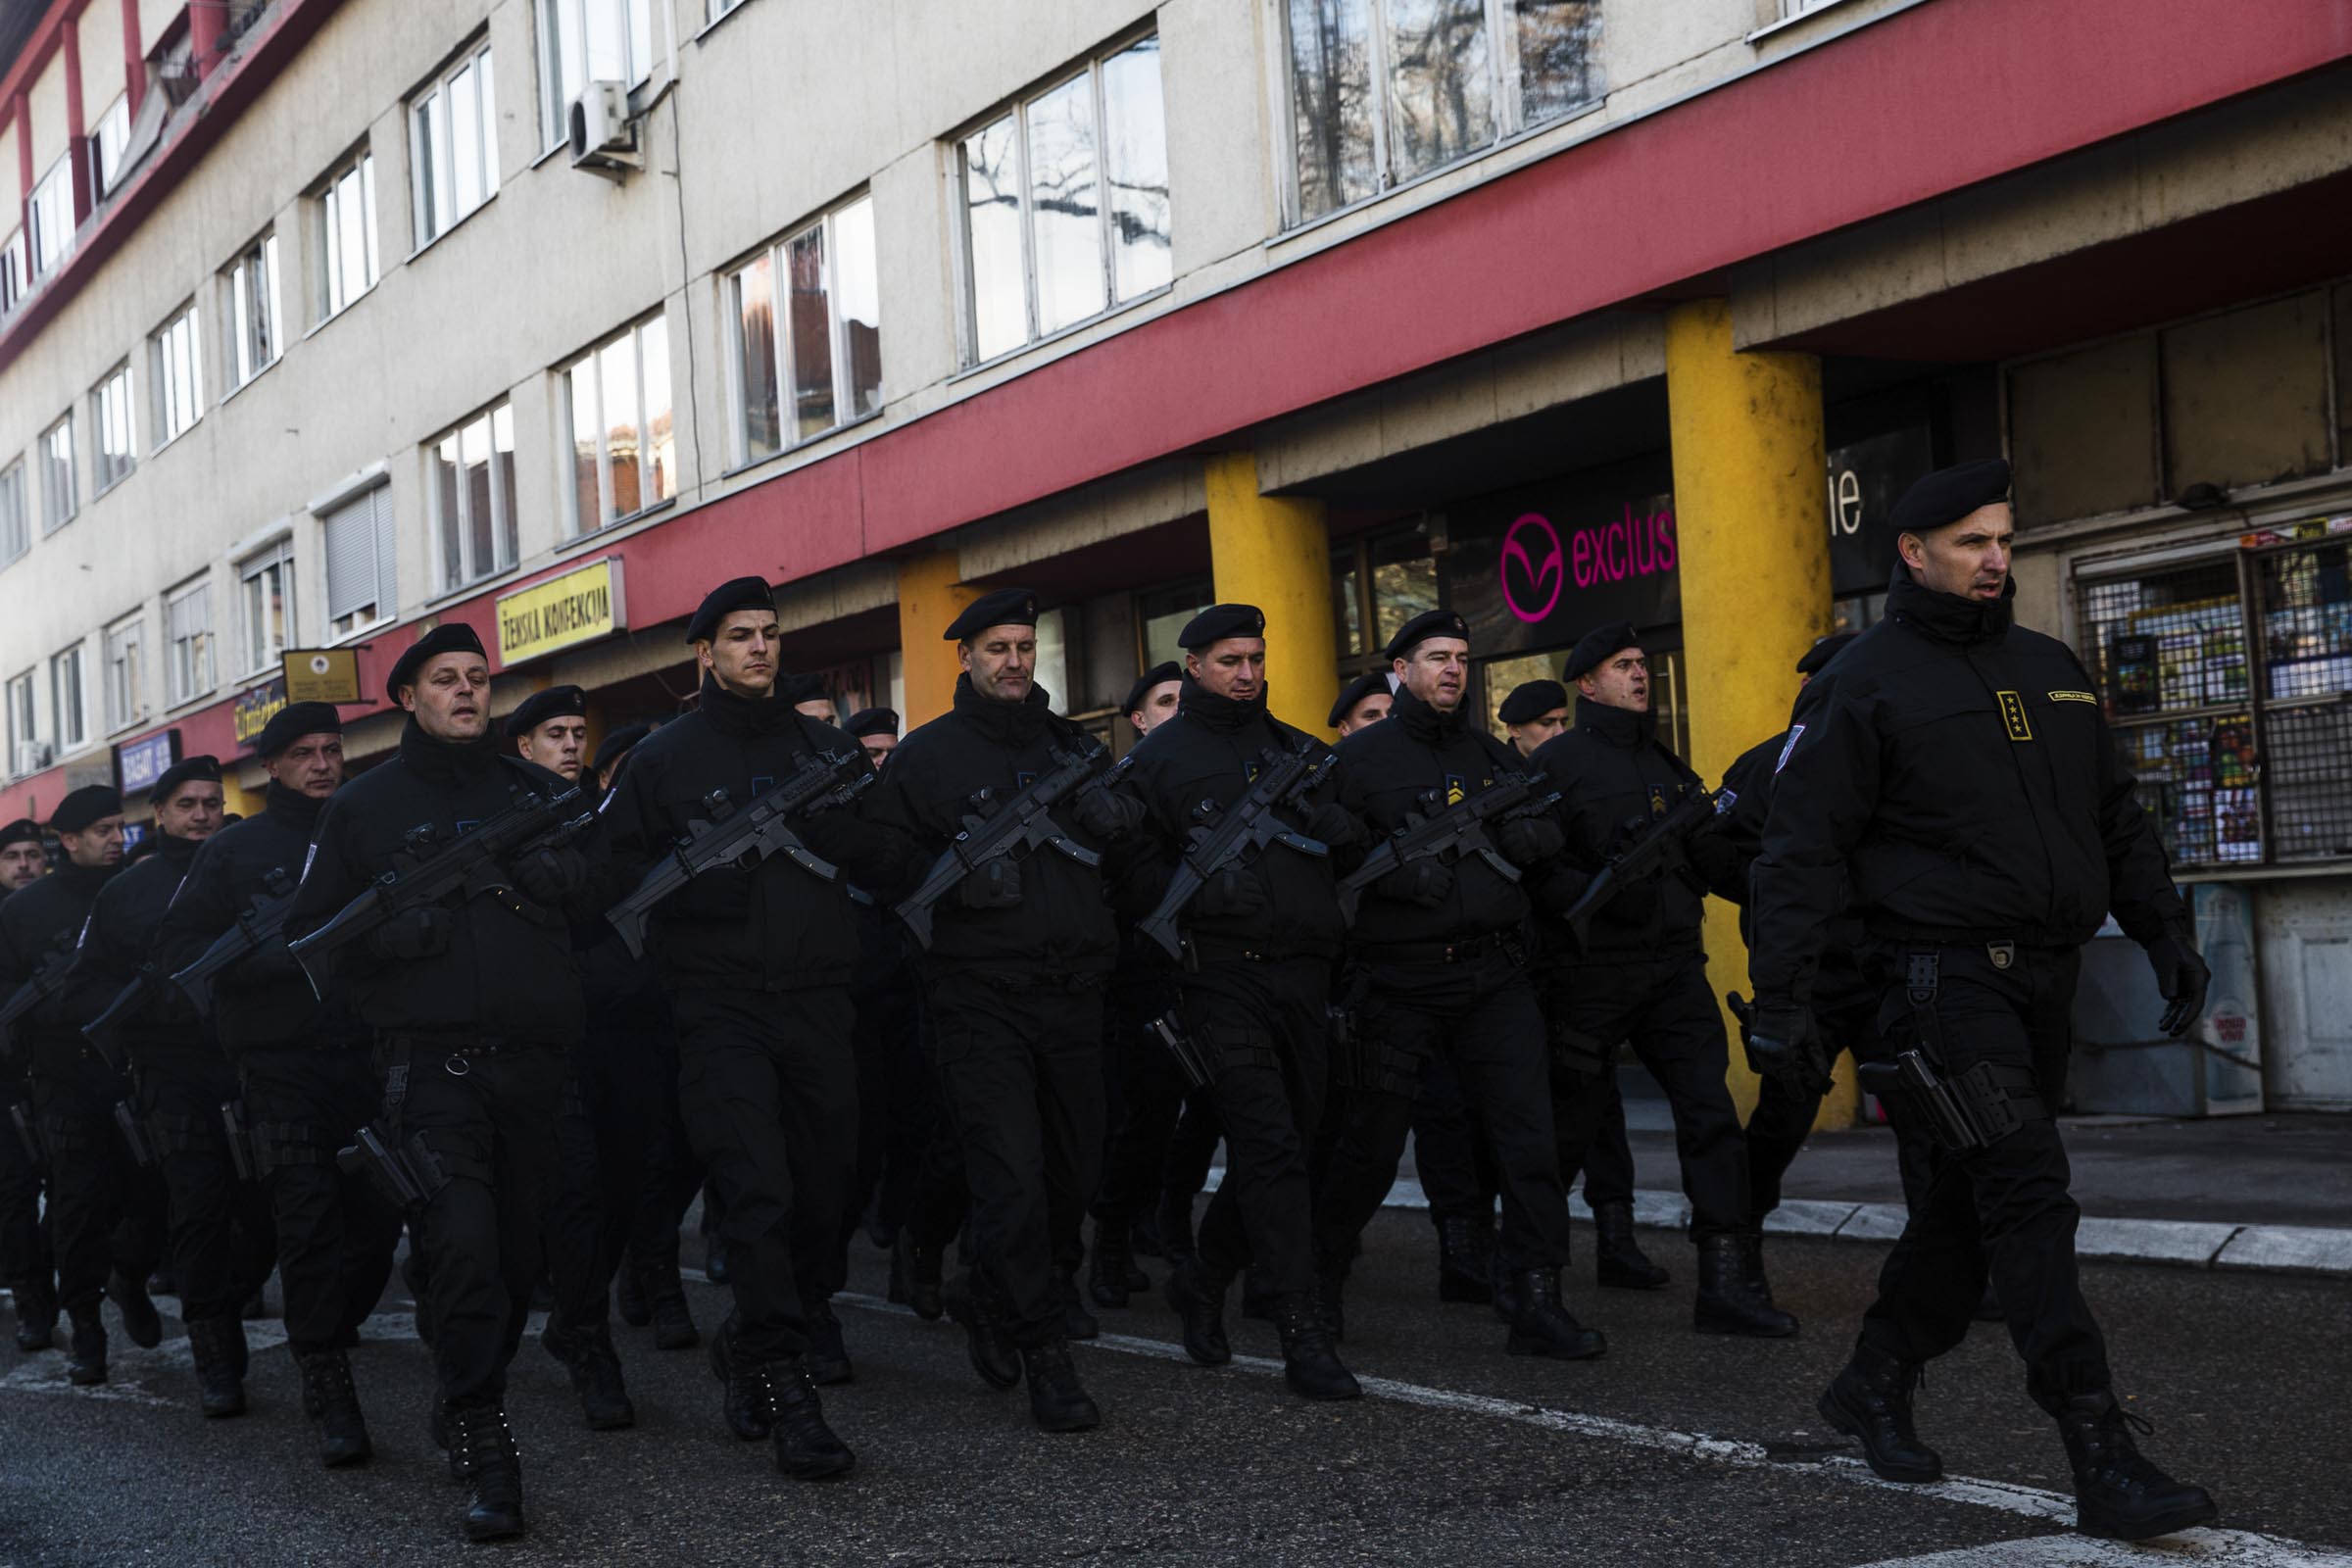 9 gennaio 2019. Dei membri delle forze dell'ordine sfilano durante la parata del 27° anniversario della festa nazionale della Repubblica Srpska. Nel 2015, la Corte costituzionale della Bosnia-Erzegovina aveva dichiarato illegale questa "festa nazionale".